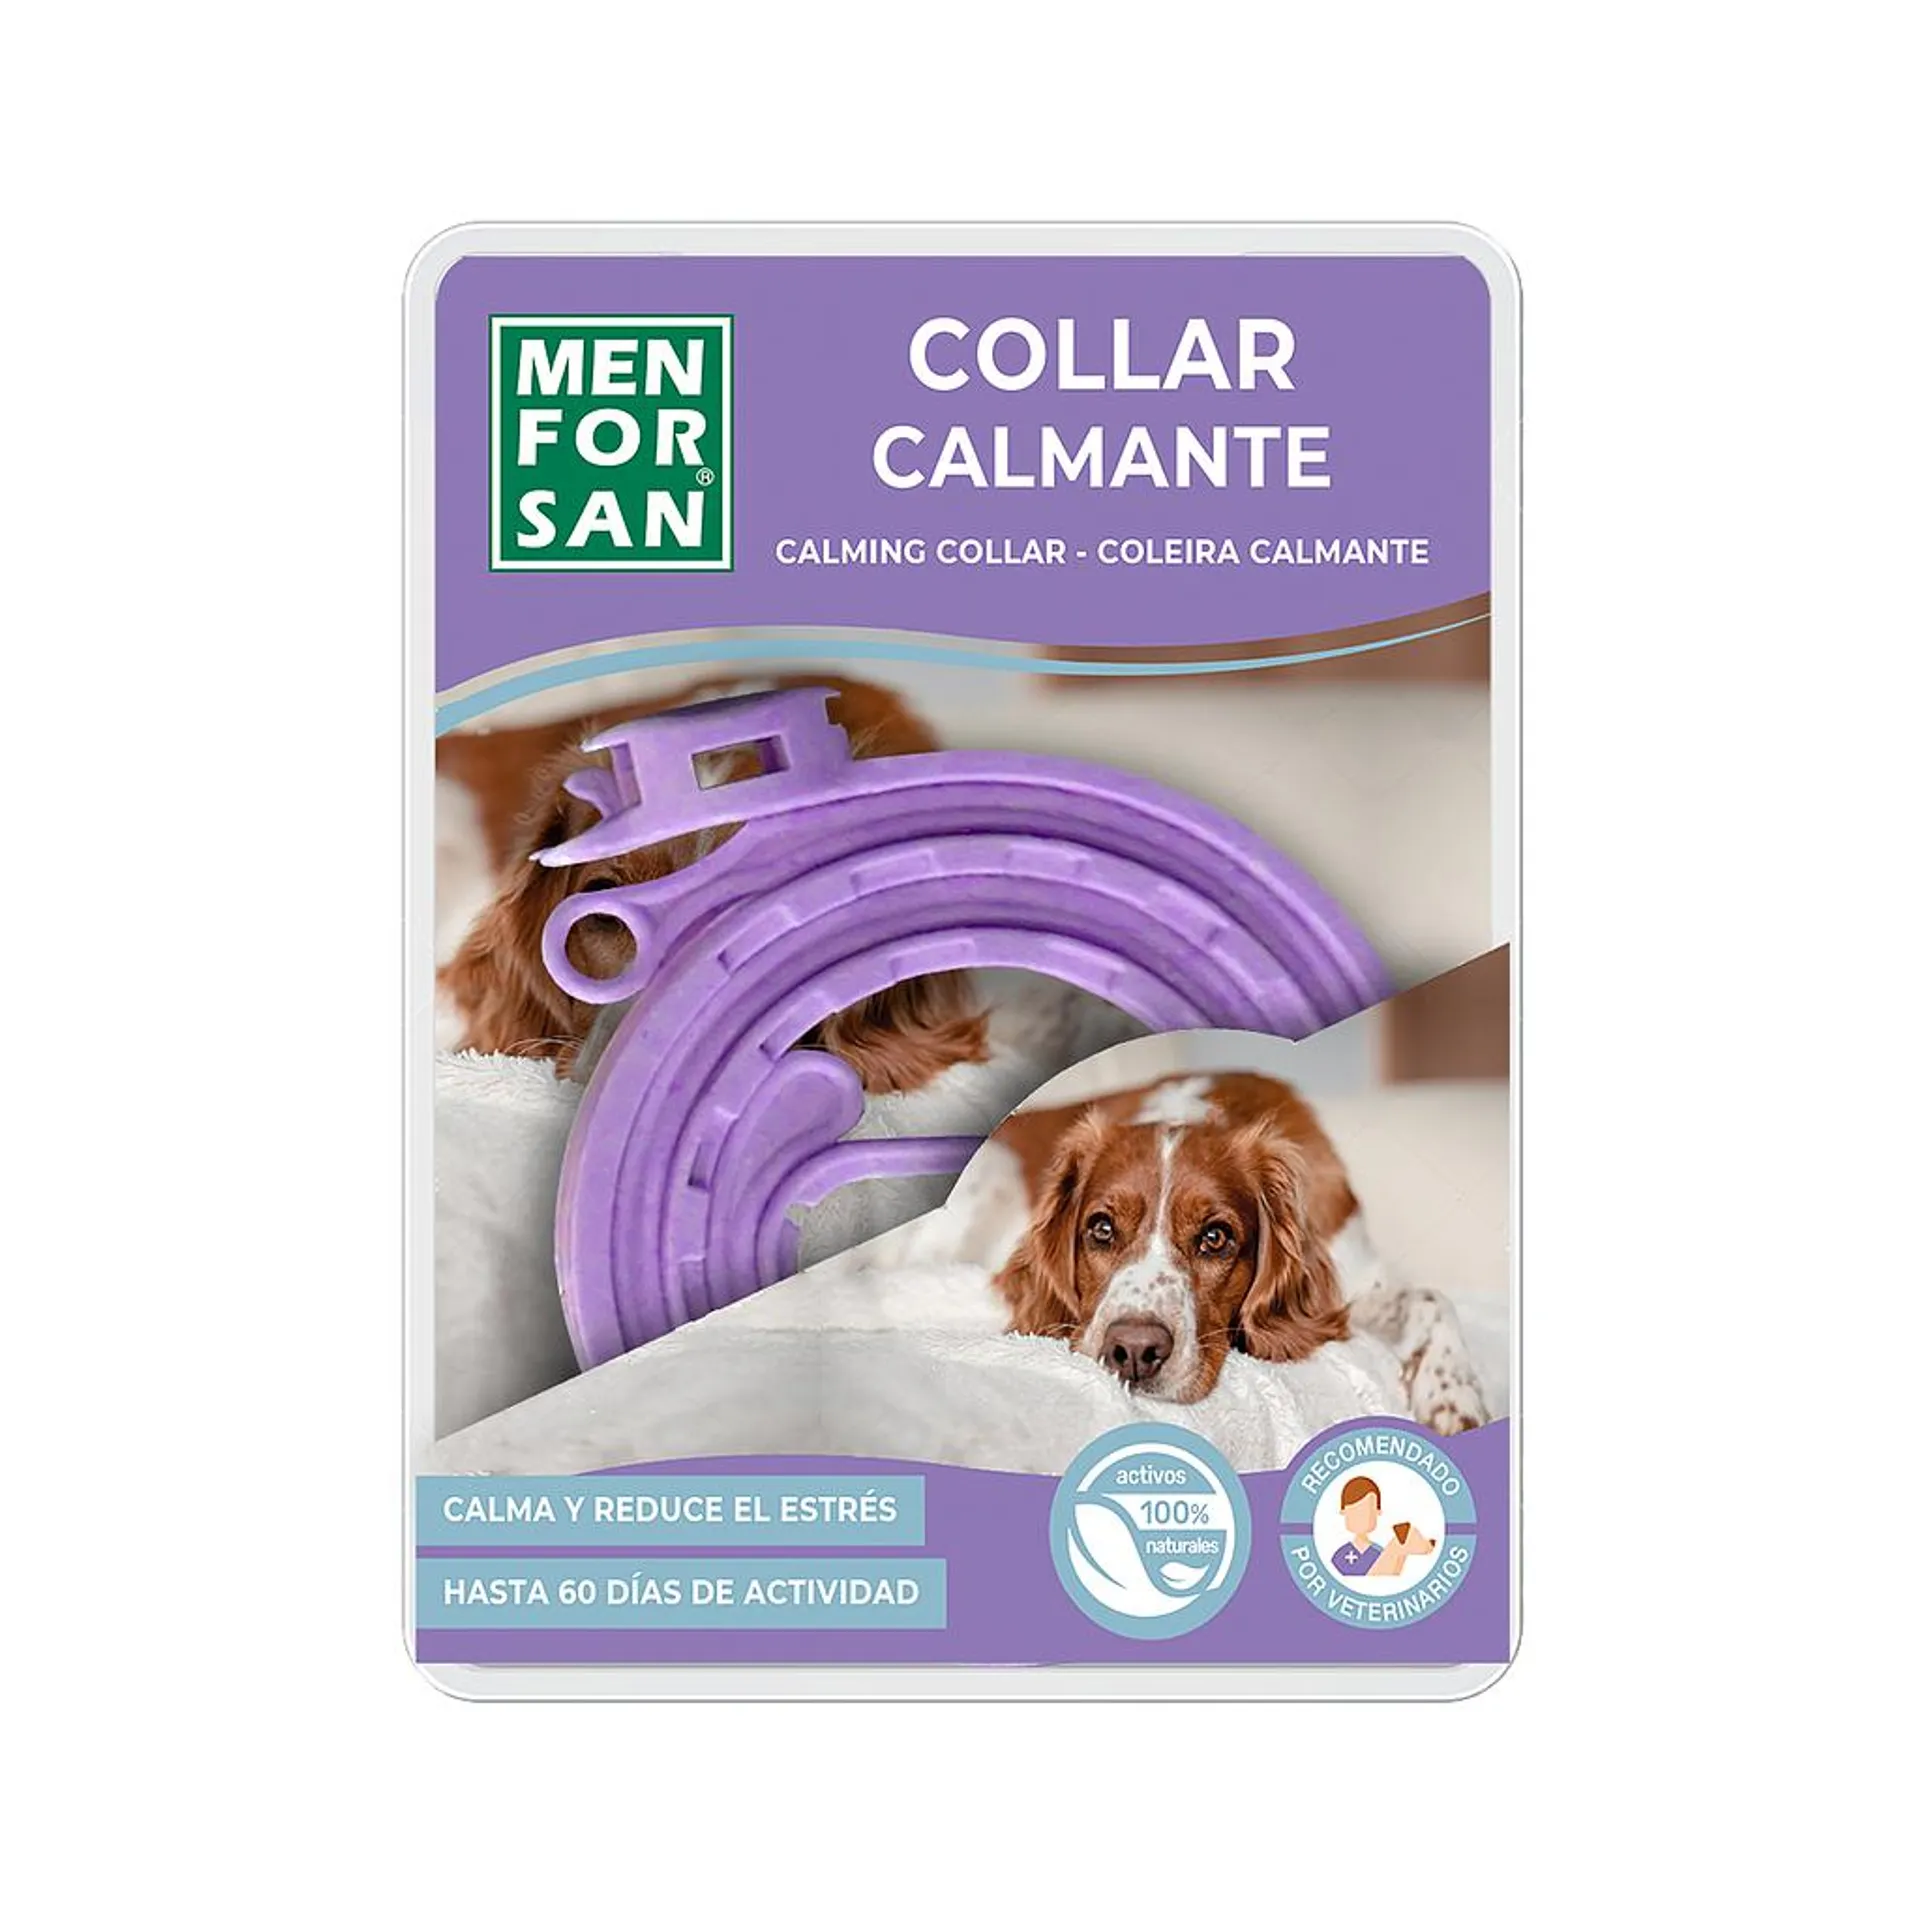 [JC-B03074] Collar calmante para perros